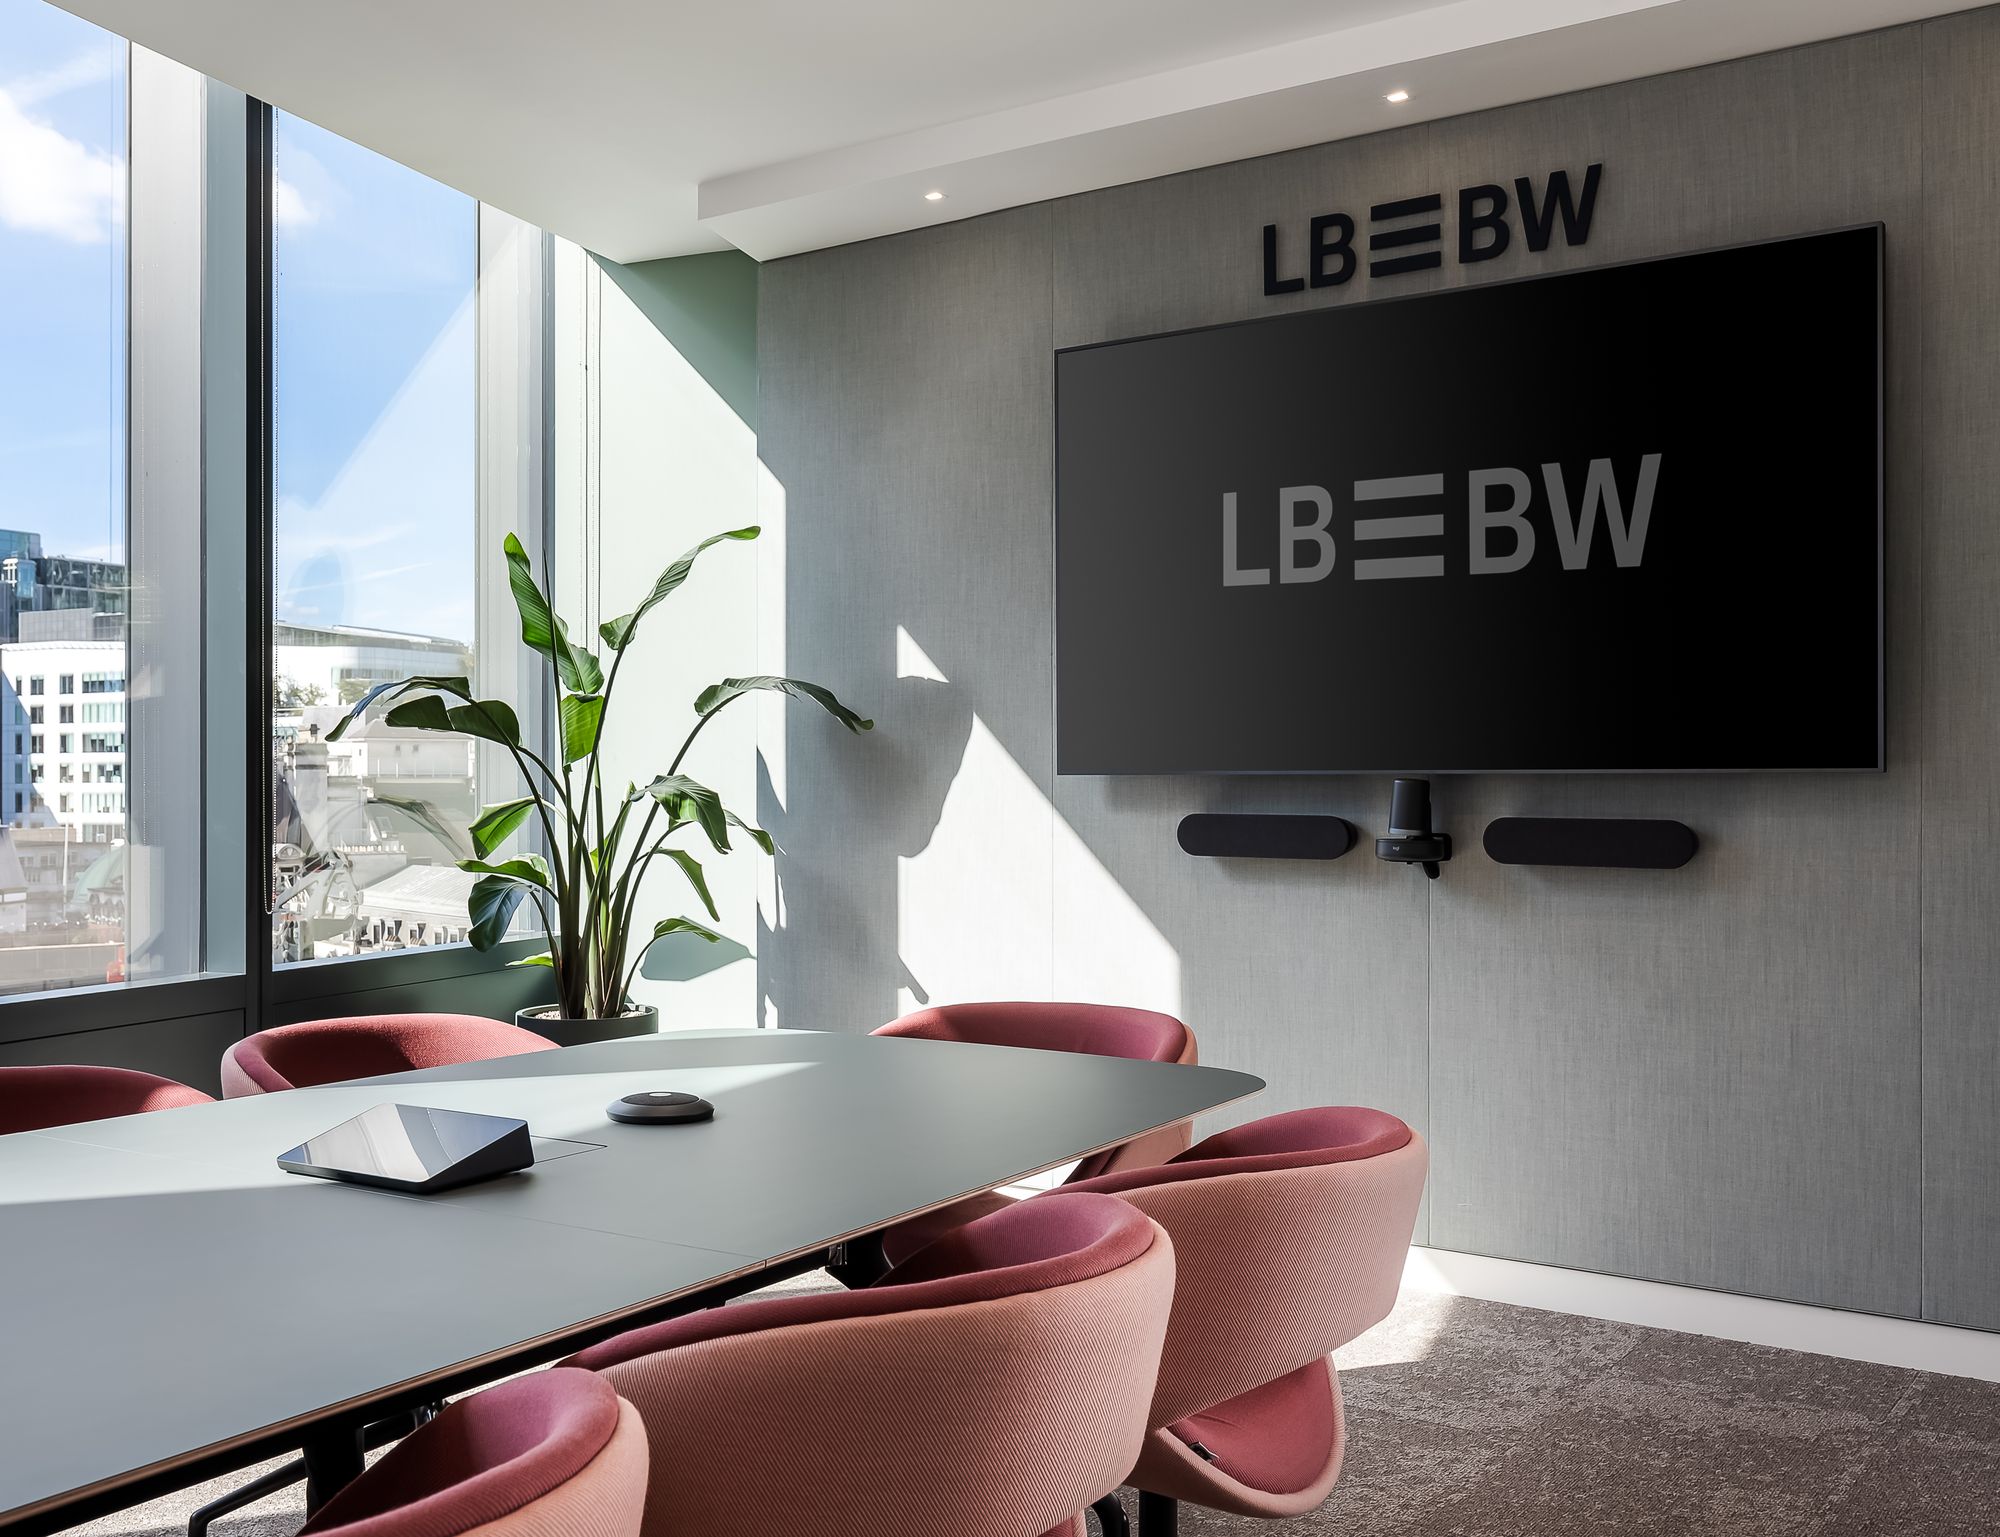 图片[8]|巴登-符腾堡州银行（LBBW）伦敦办事处|ART-Arrakis | 建筑室内设计的创新与灵感